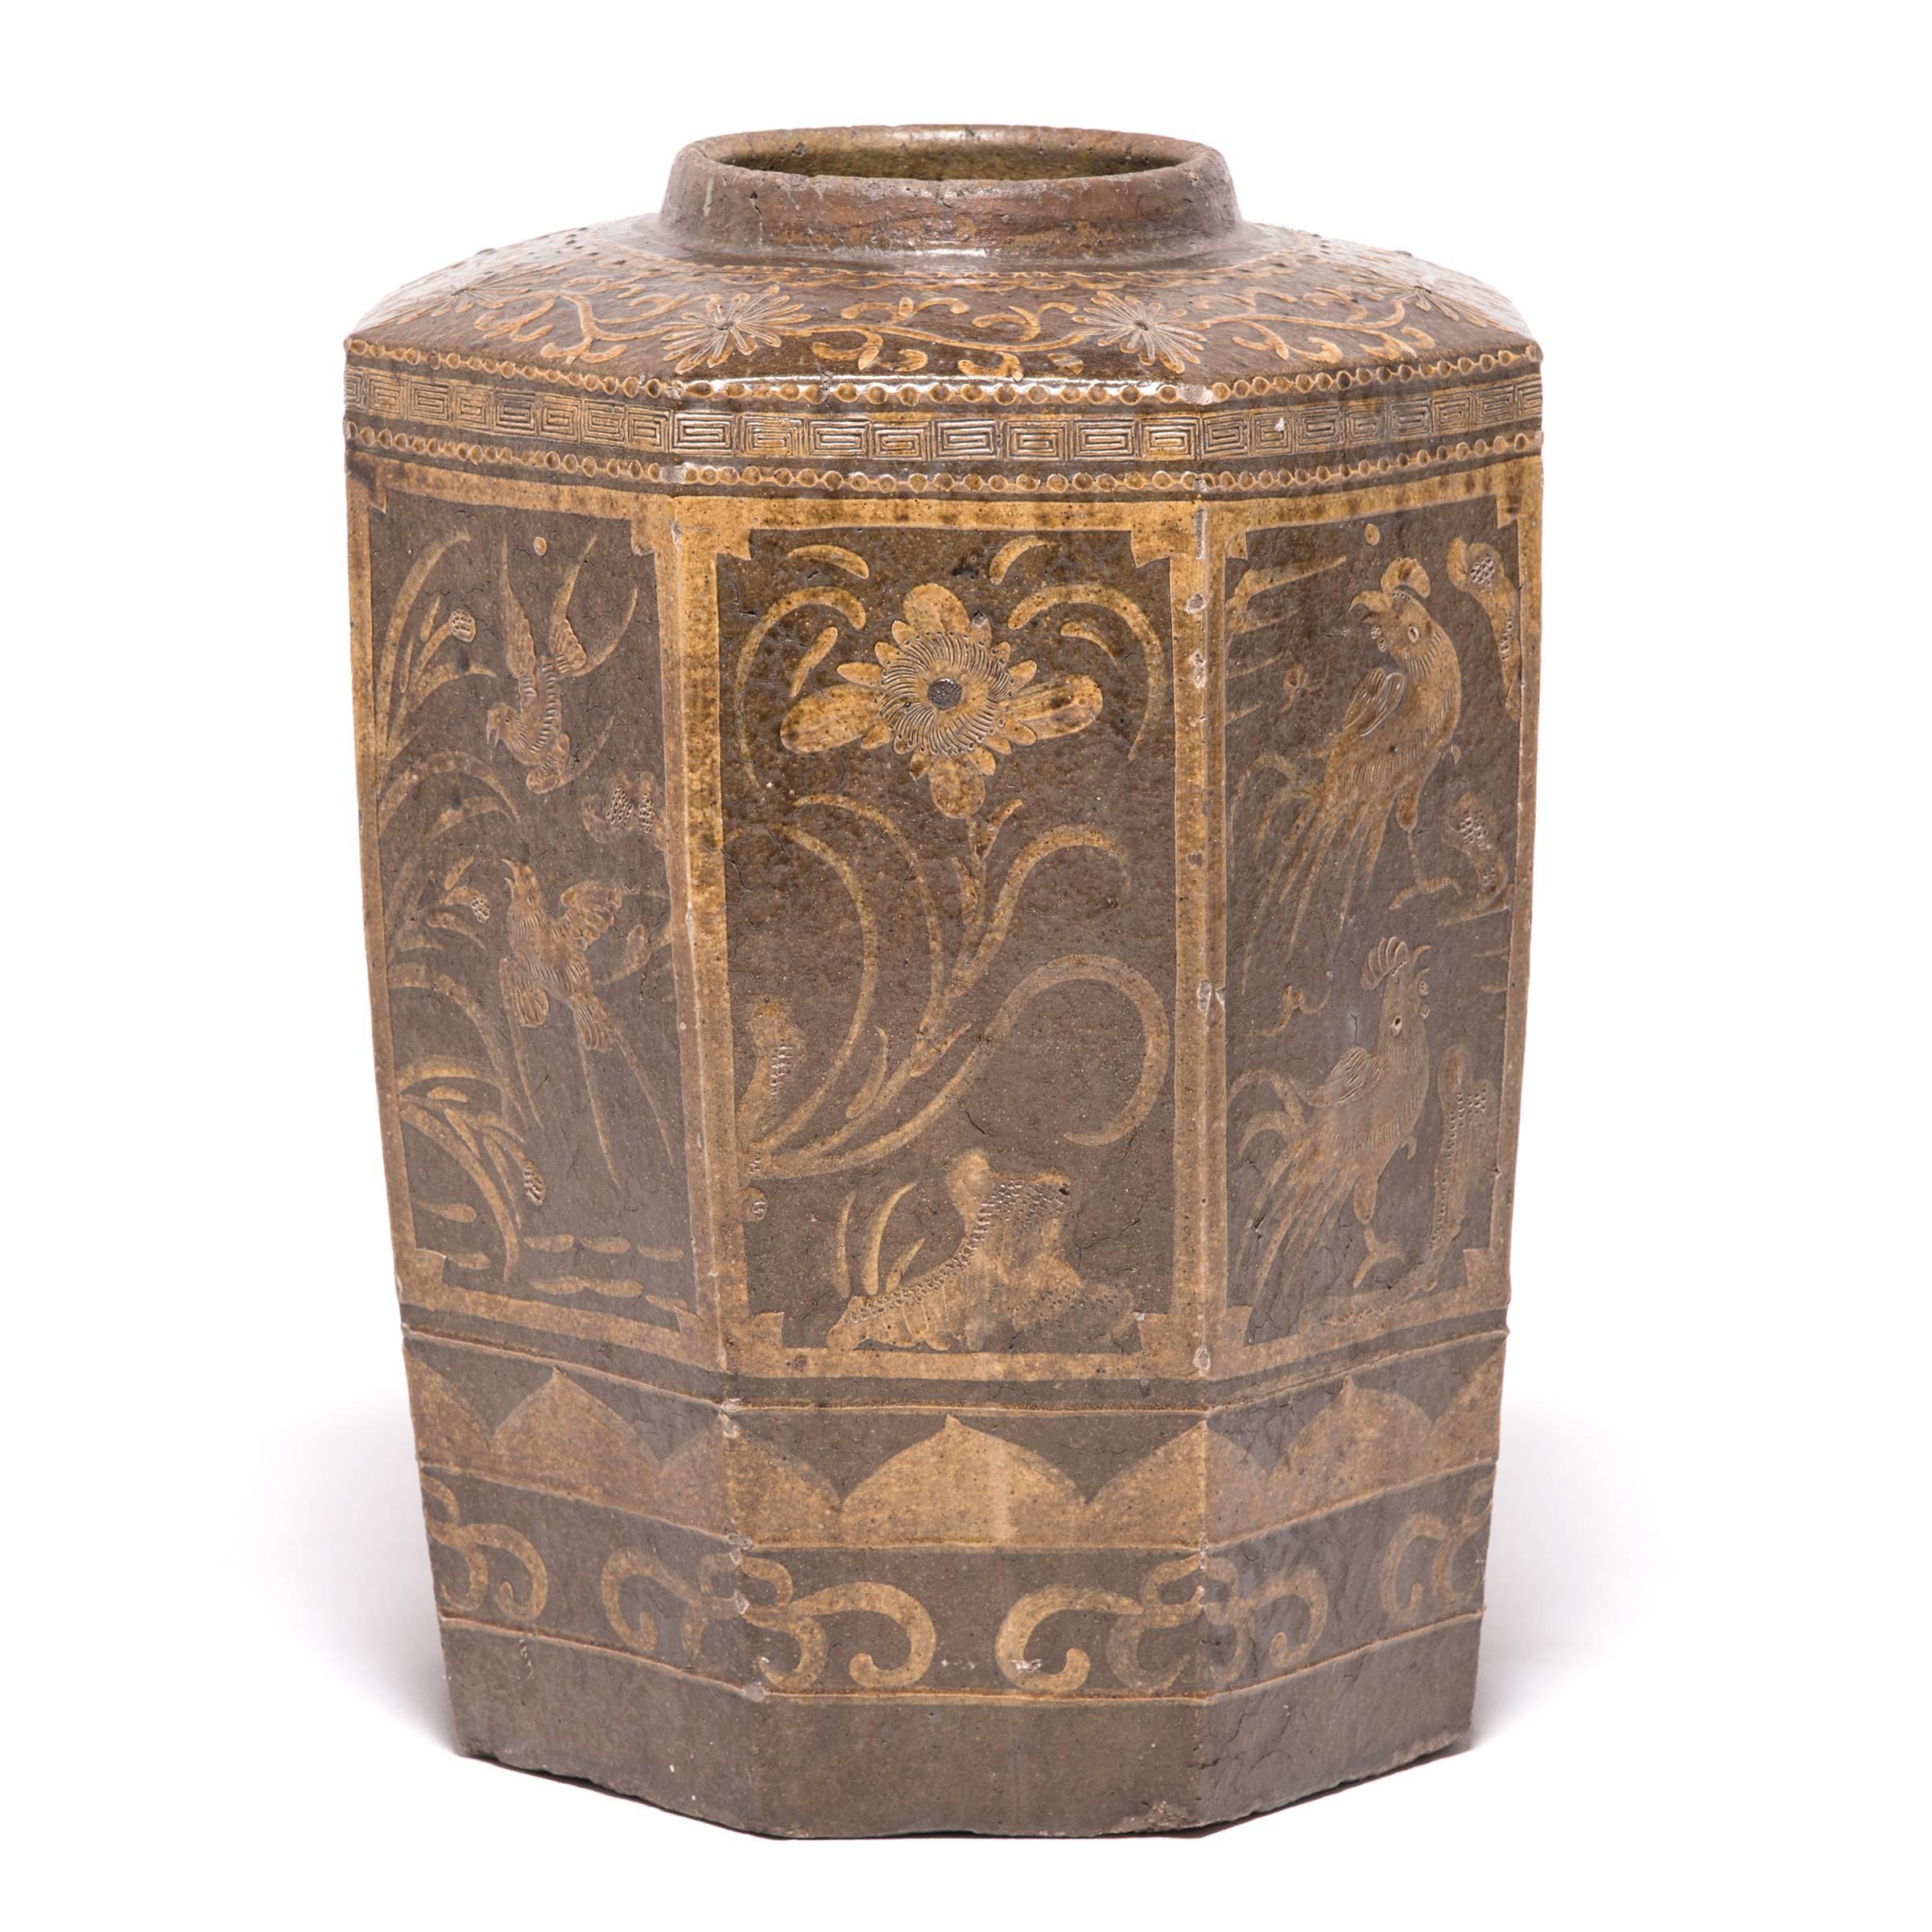 Cette urne vitrée à huit côtés du XIXe siècle, originaire du sud de la Chine, a été finement peinte d'animaux de bon augure, dont une grue, représentant la communication divine et l'immortalité. L'échelle monumentale permet de détailler de manière